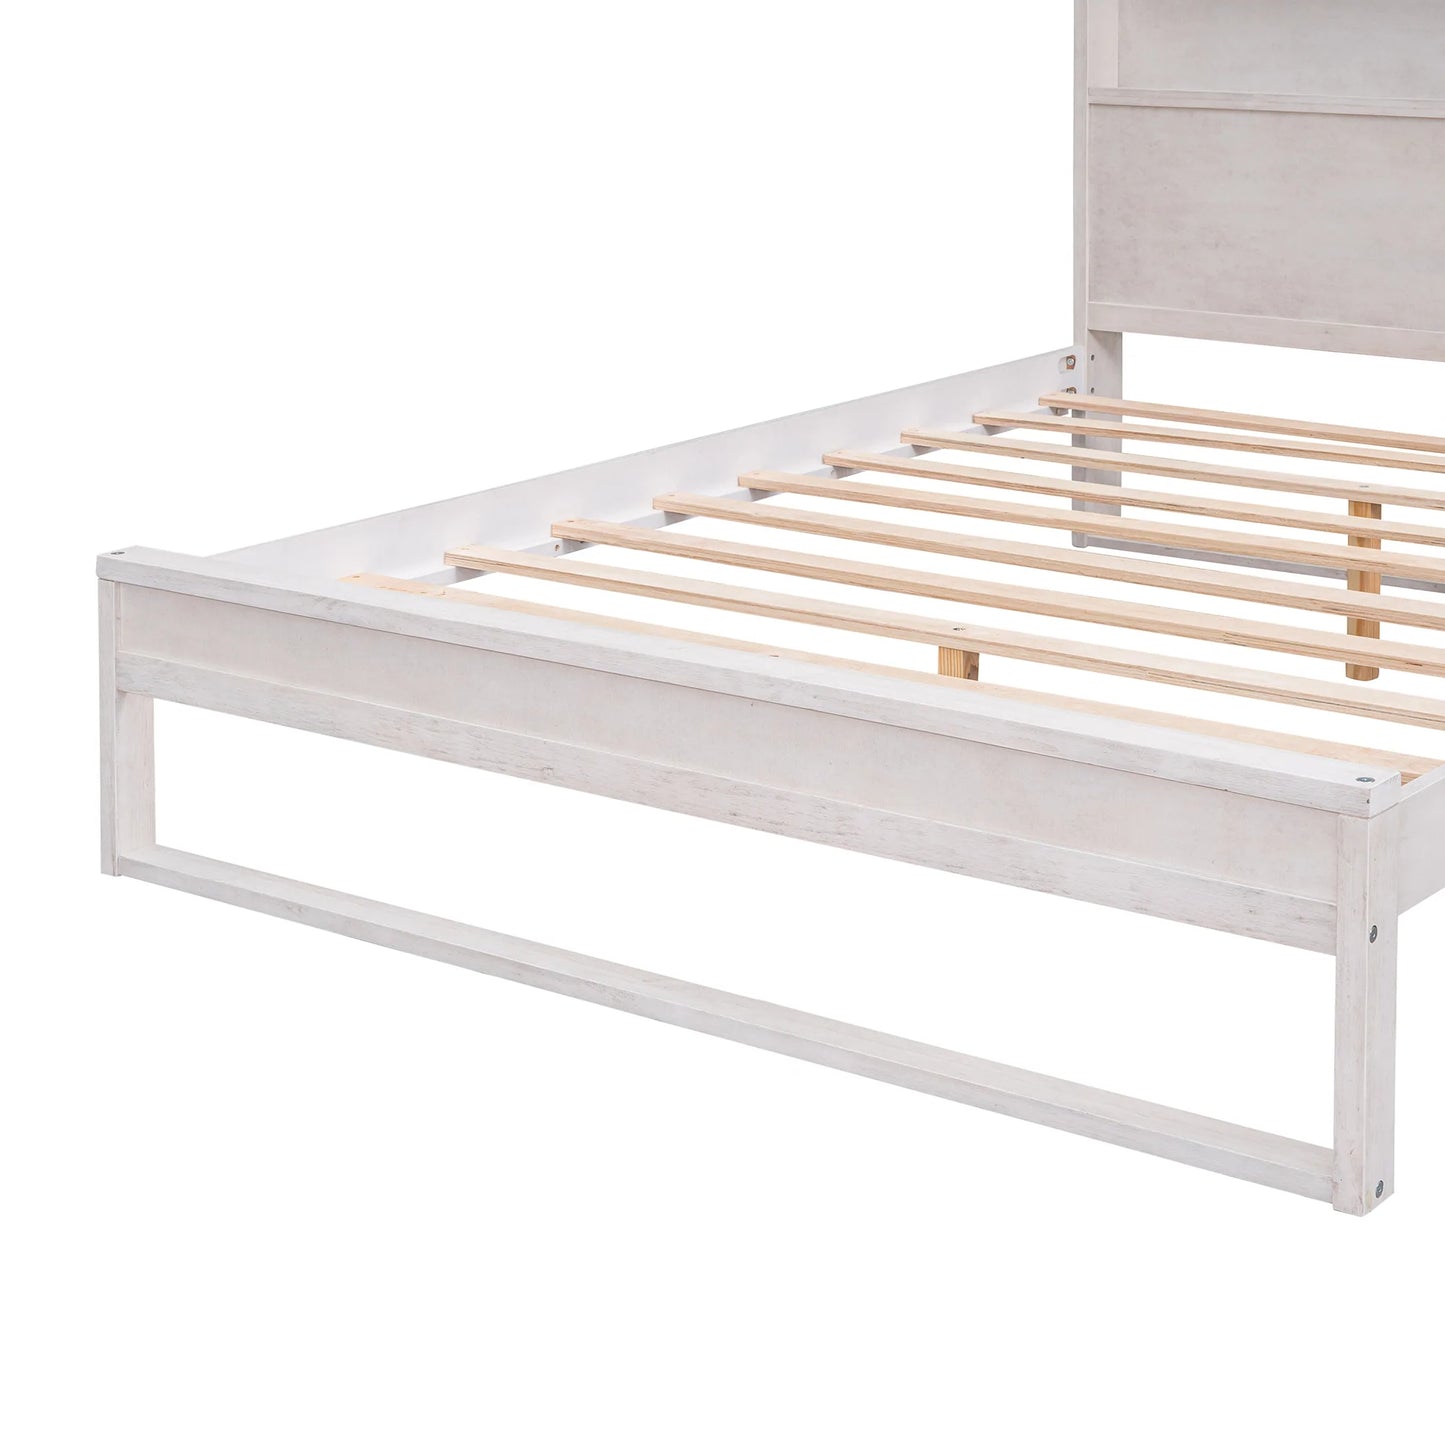 Bed Platform with Storage in Queen Antique White